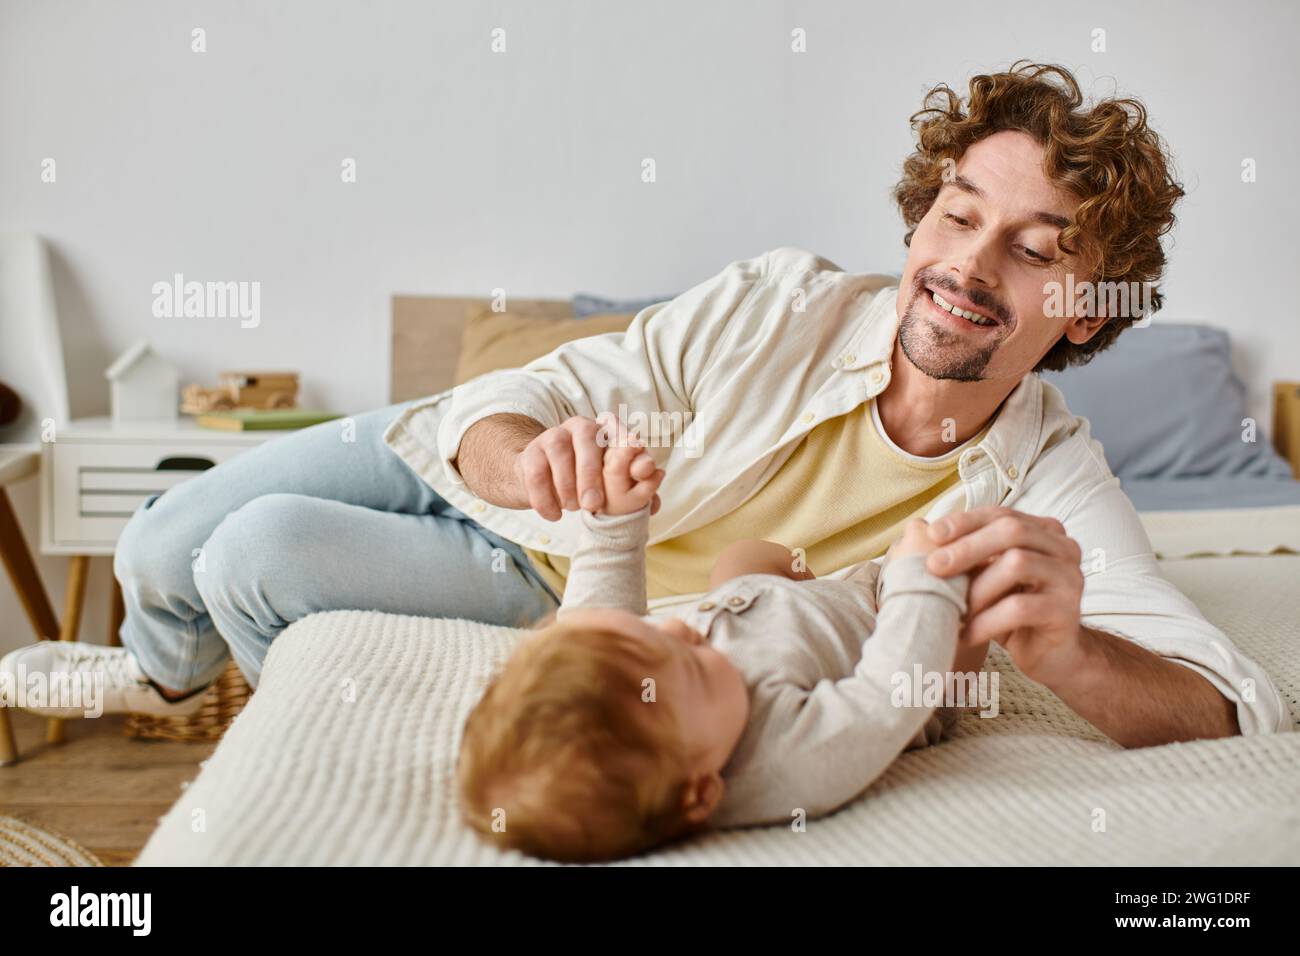 Glücklicher Vater mit lockigen Haaren, der die Hände seines kleinen Jungen hält, während er zusammen auf dem Bett lag, unschuldig Stockfoto